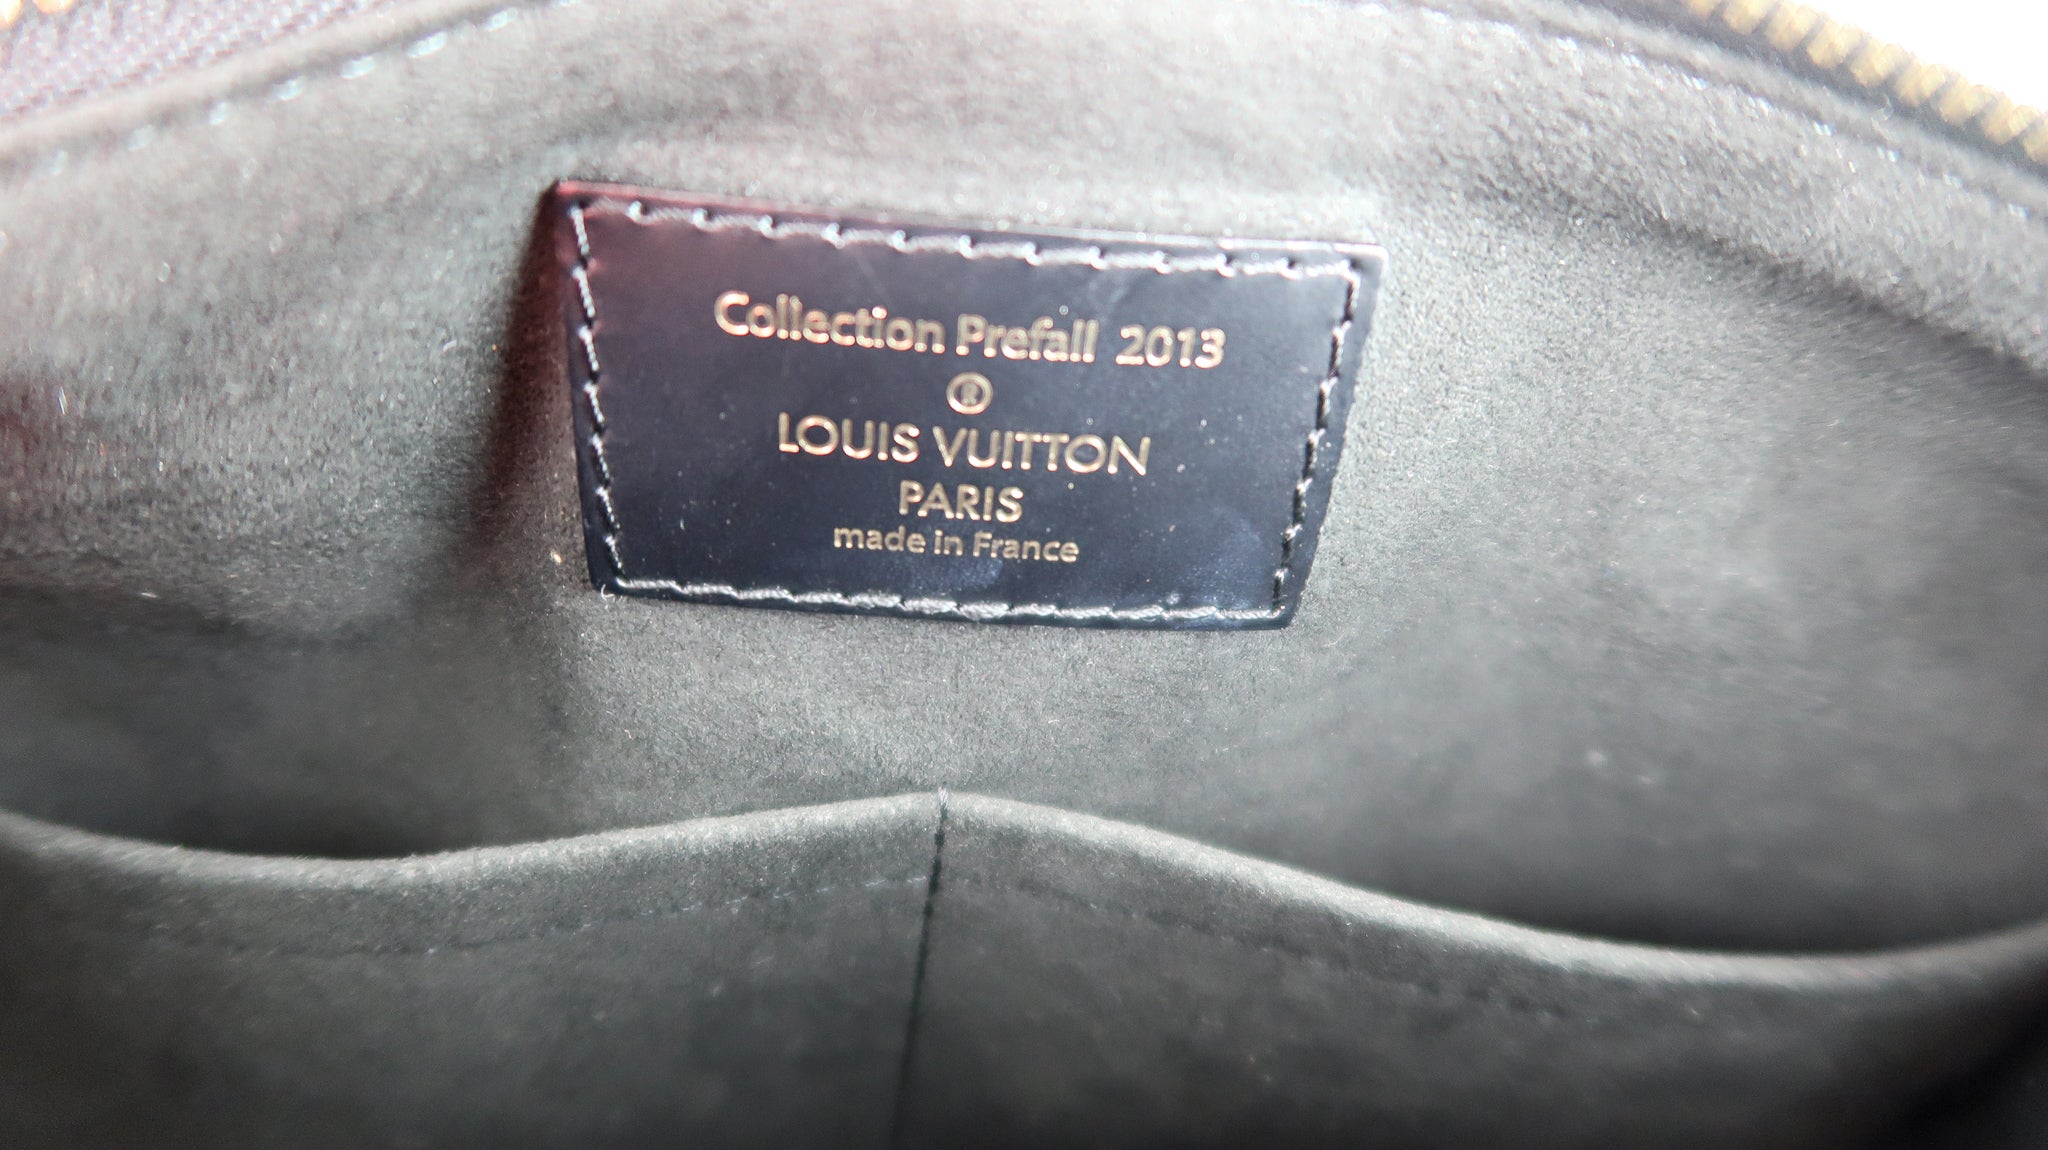 Louis Vuitton Prefall 2013 Speedy 30 Damier Paillettes Canvas